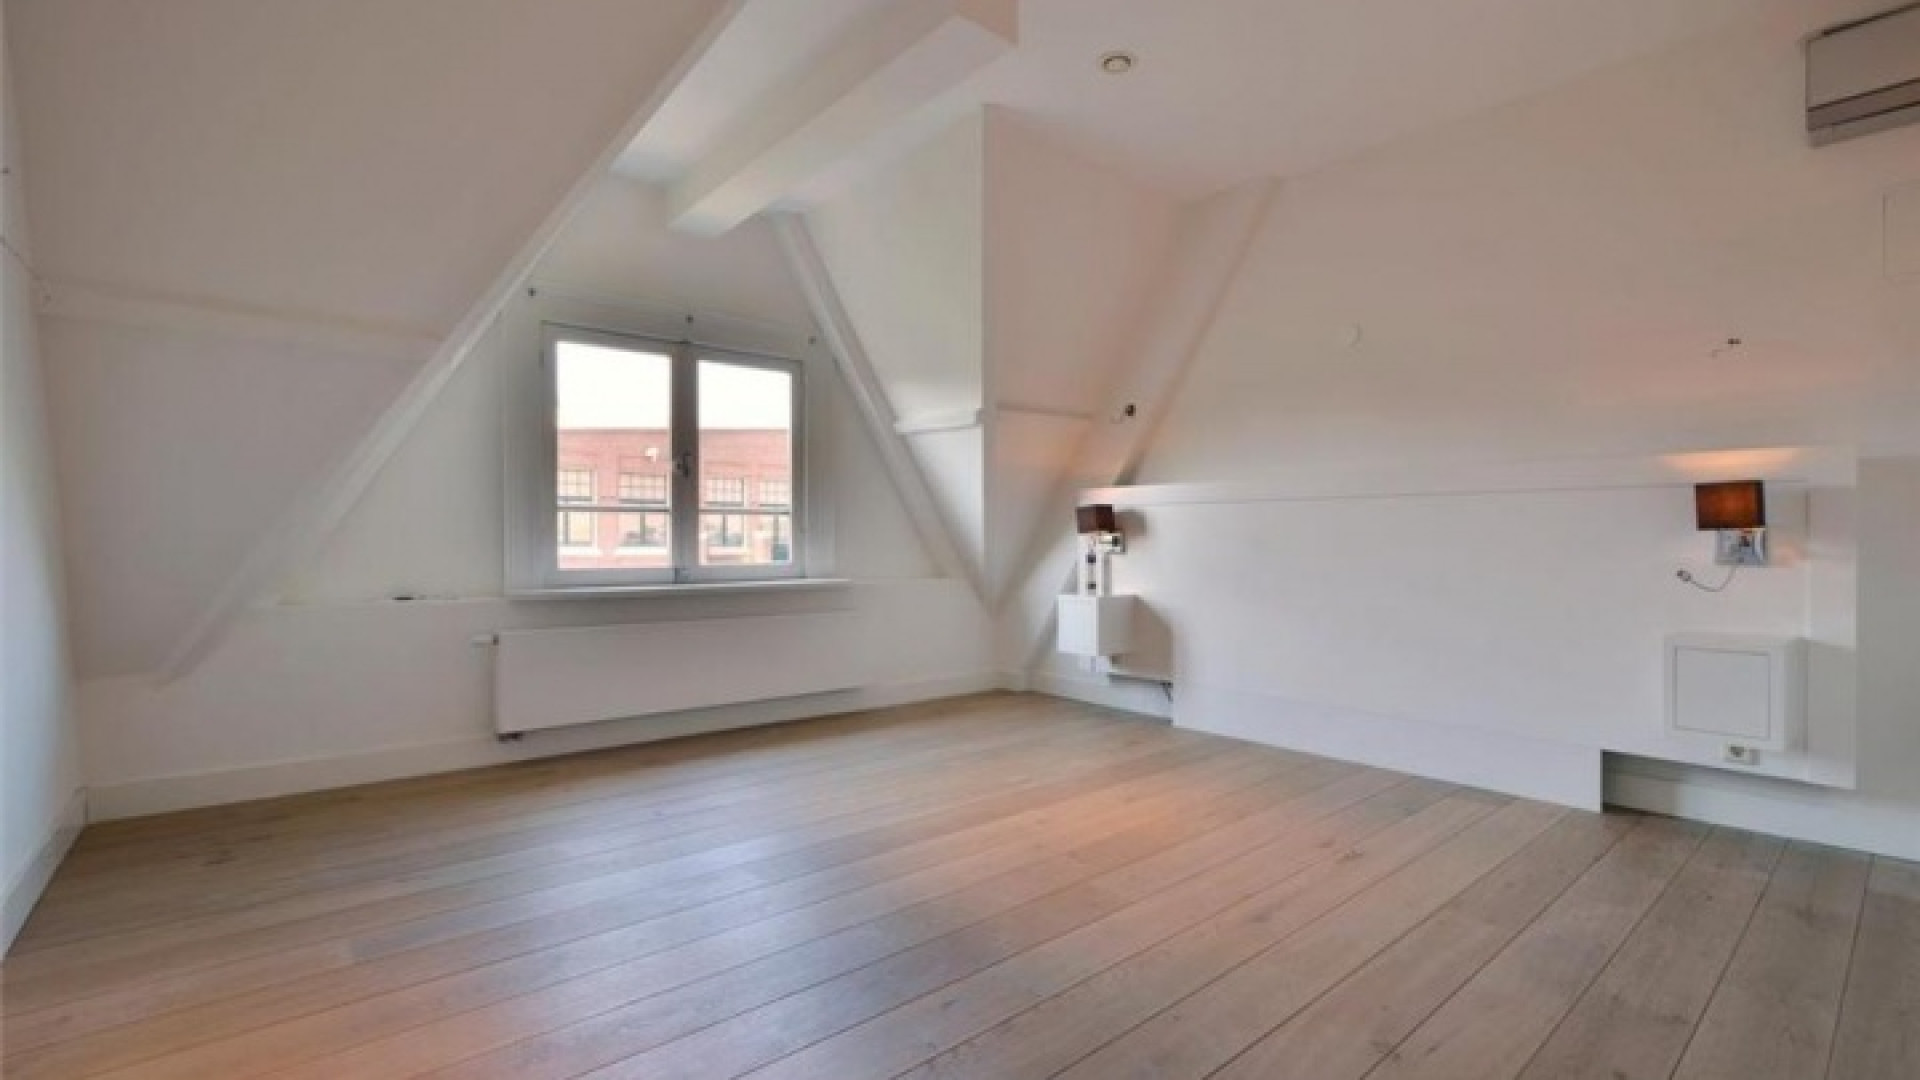 Frank Rijkaard zoekt huurder voor zijn luxe dubbele bovenhuis. Zie foto's 17